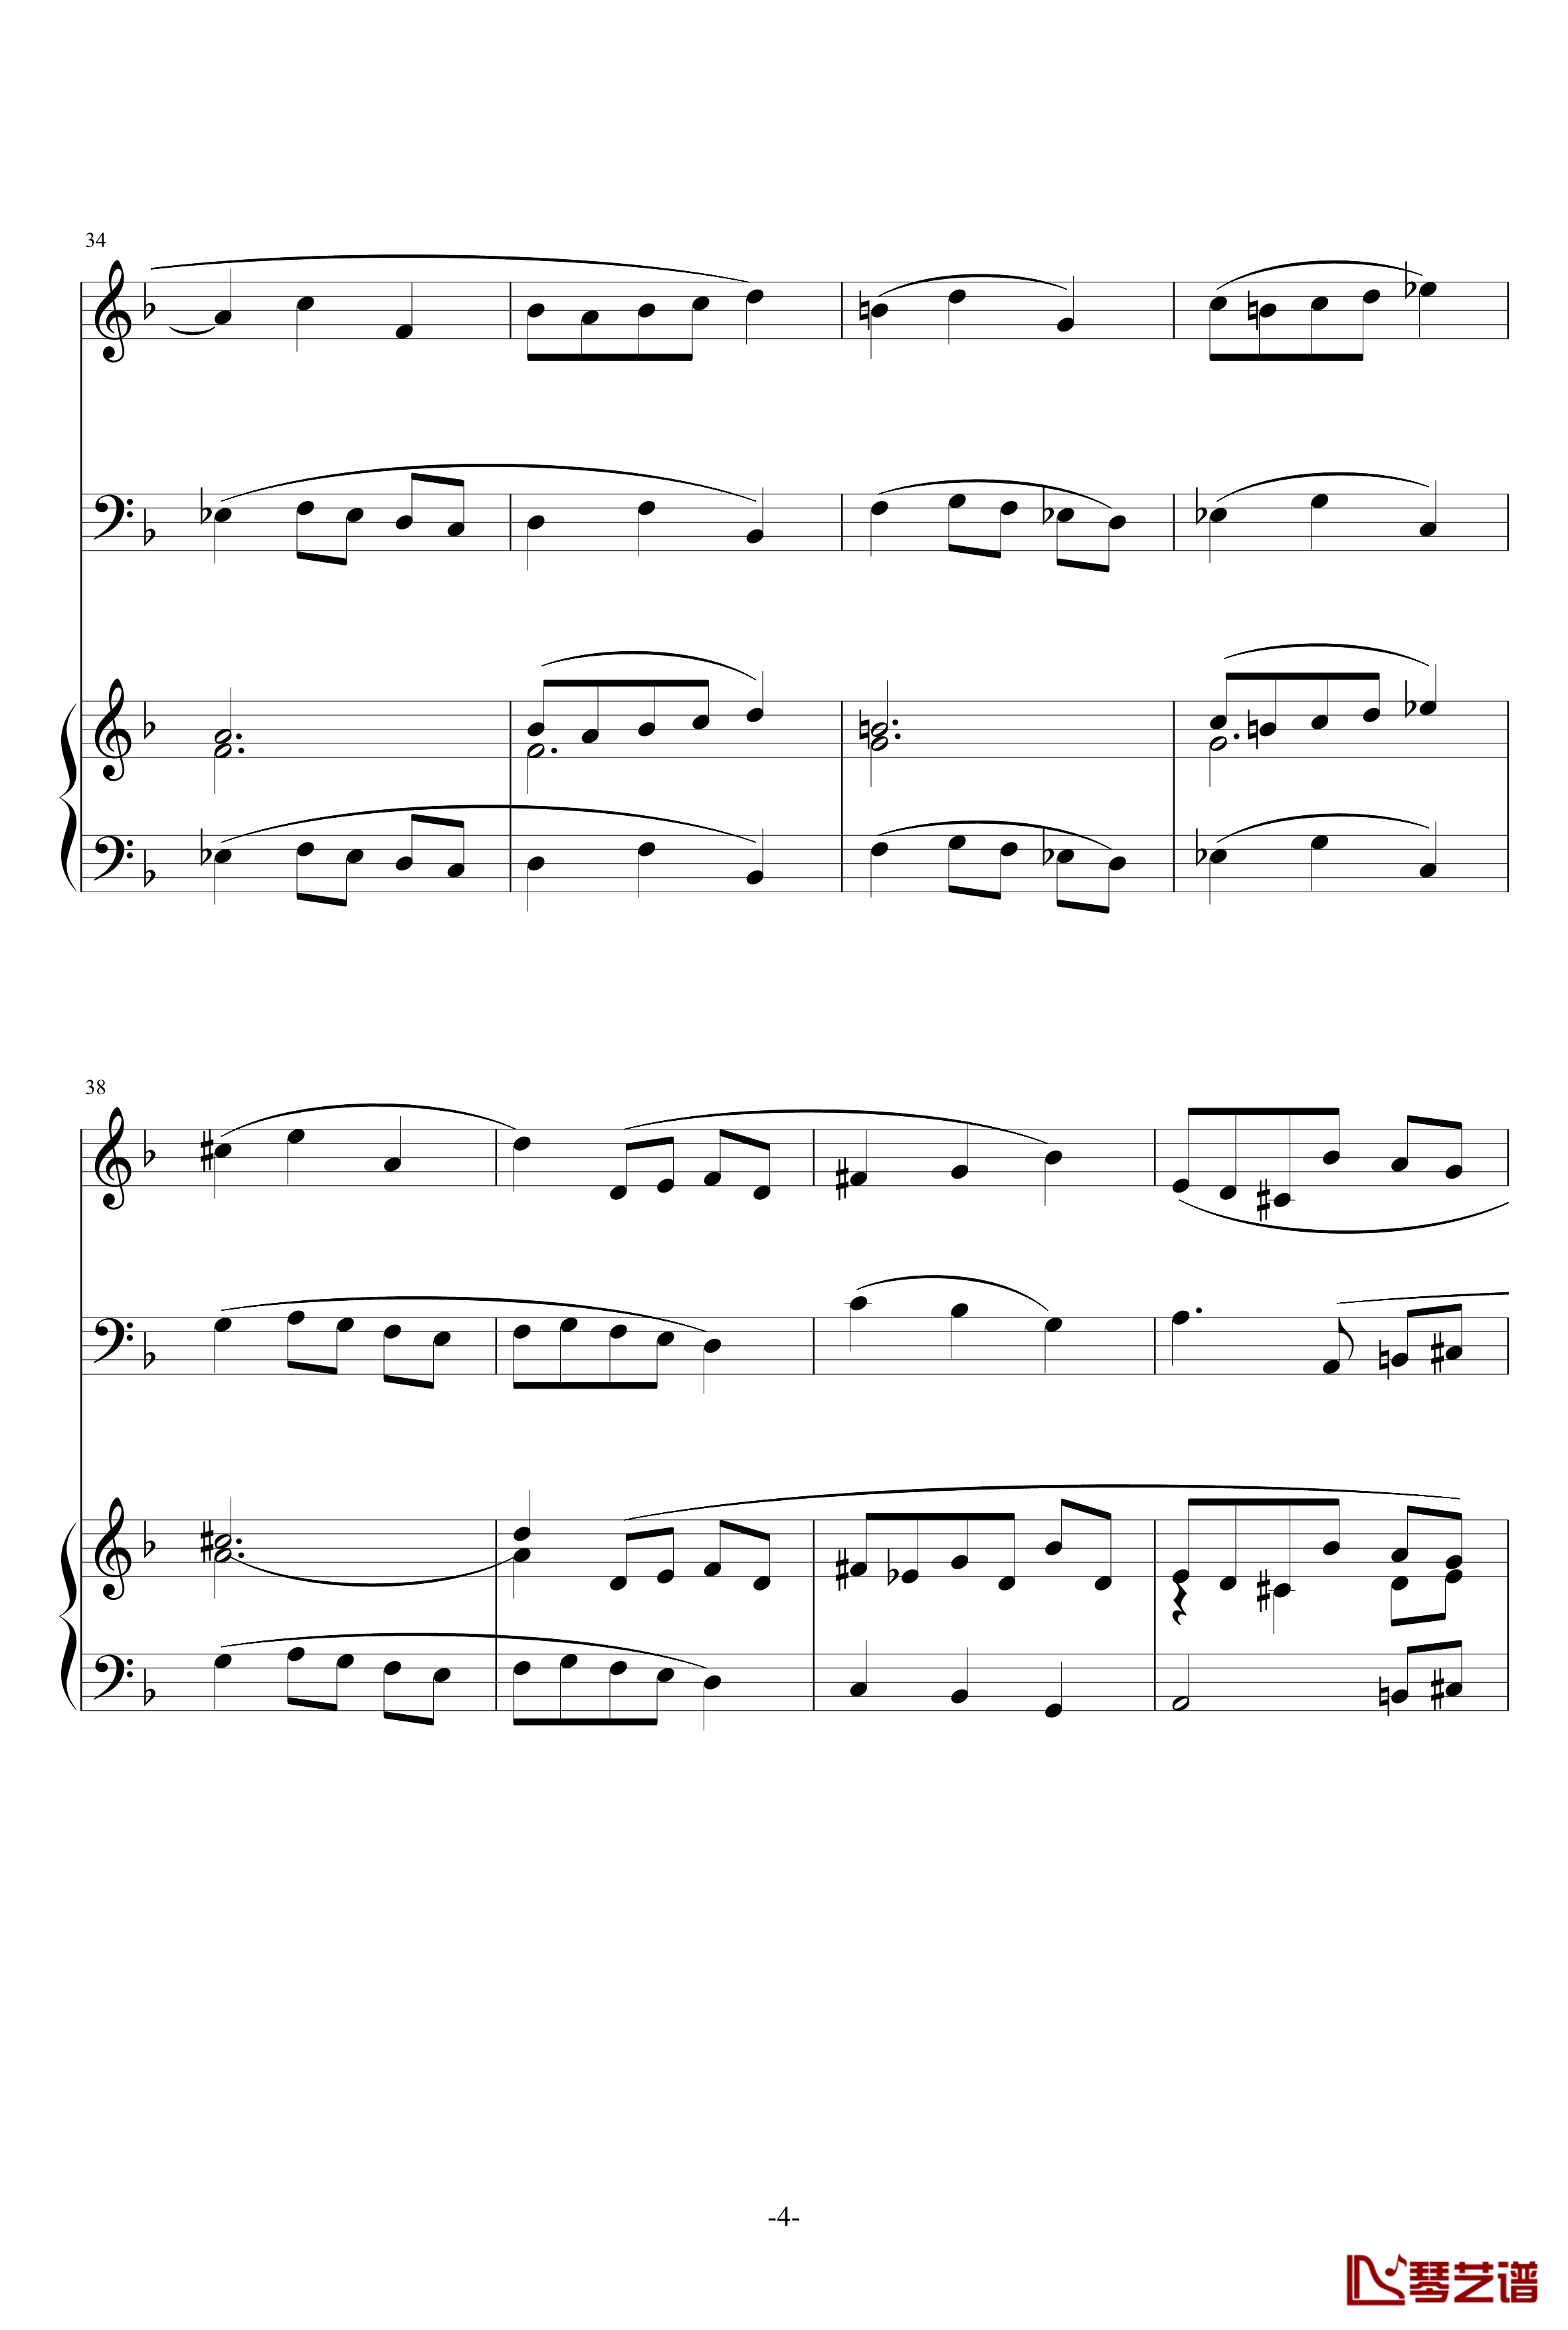 巴洛克风格小提琴协奏曲第一乐章钢琴谱-巴洛克4